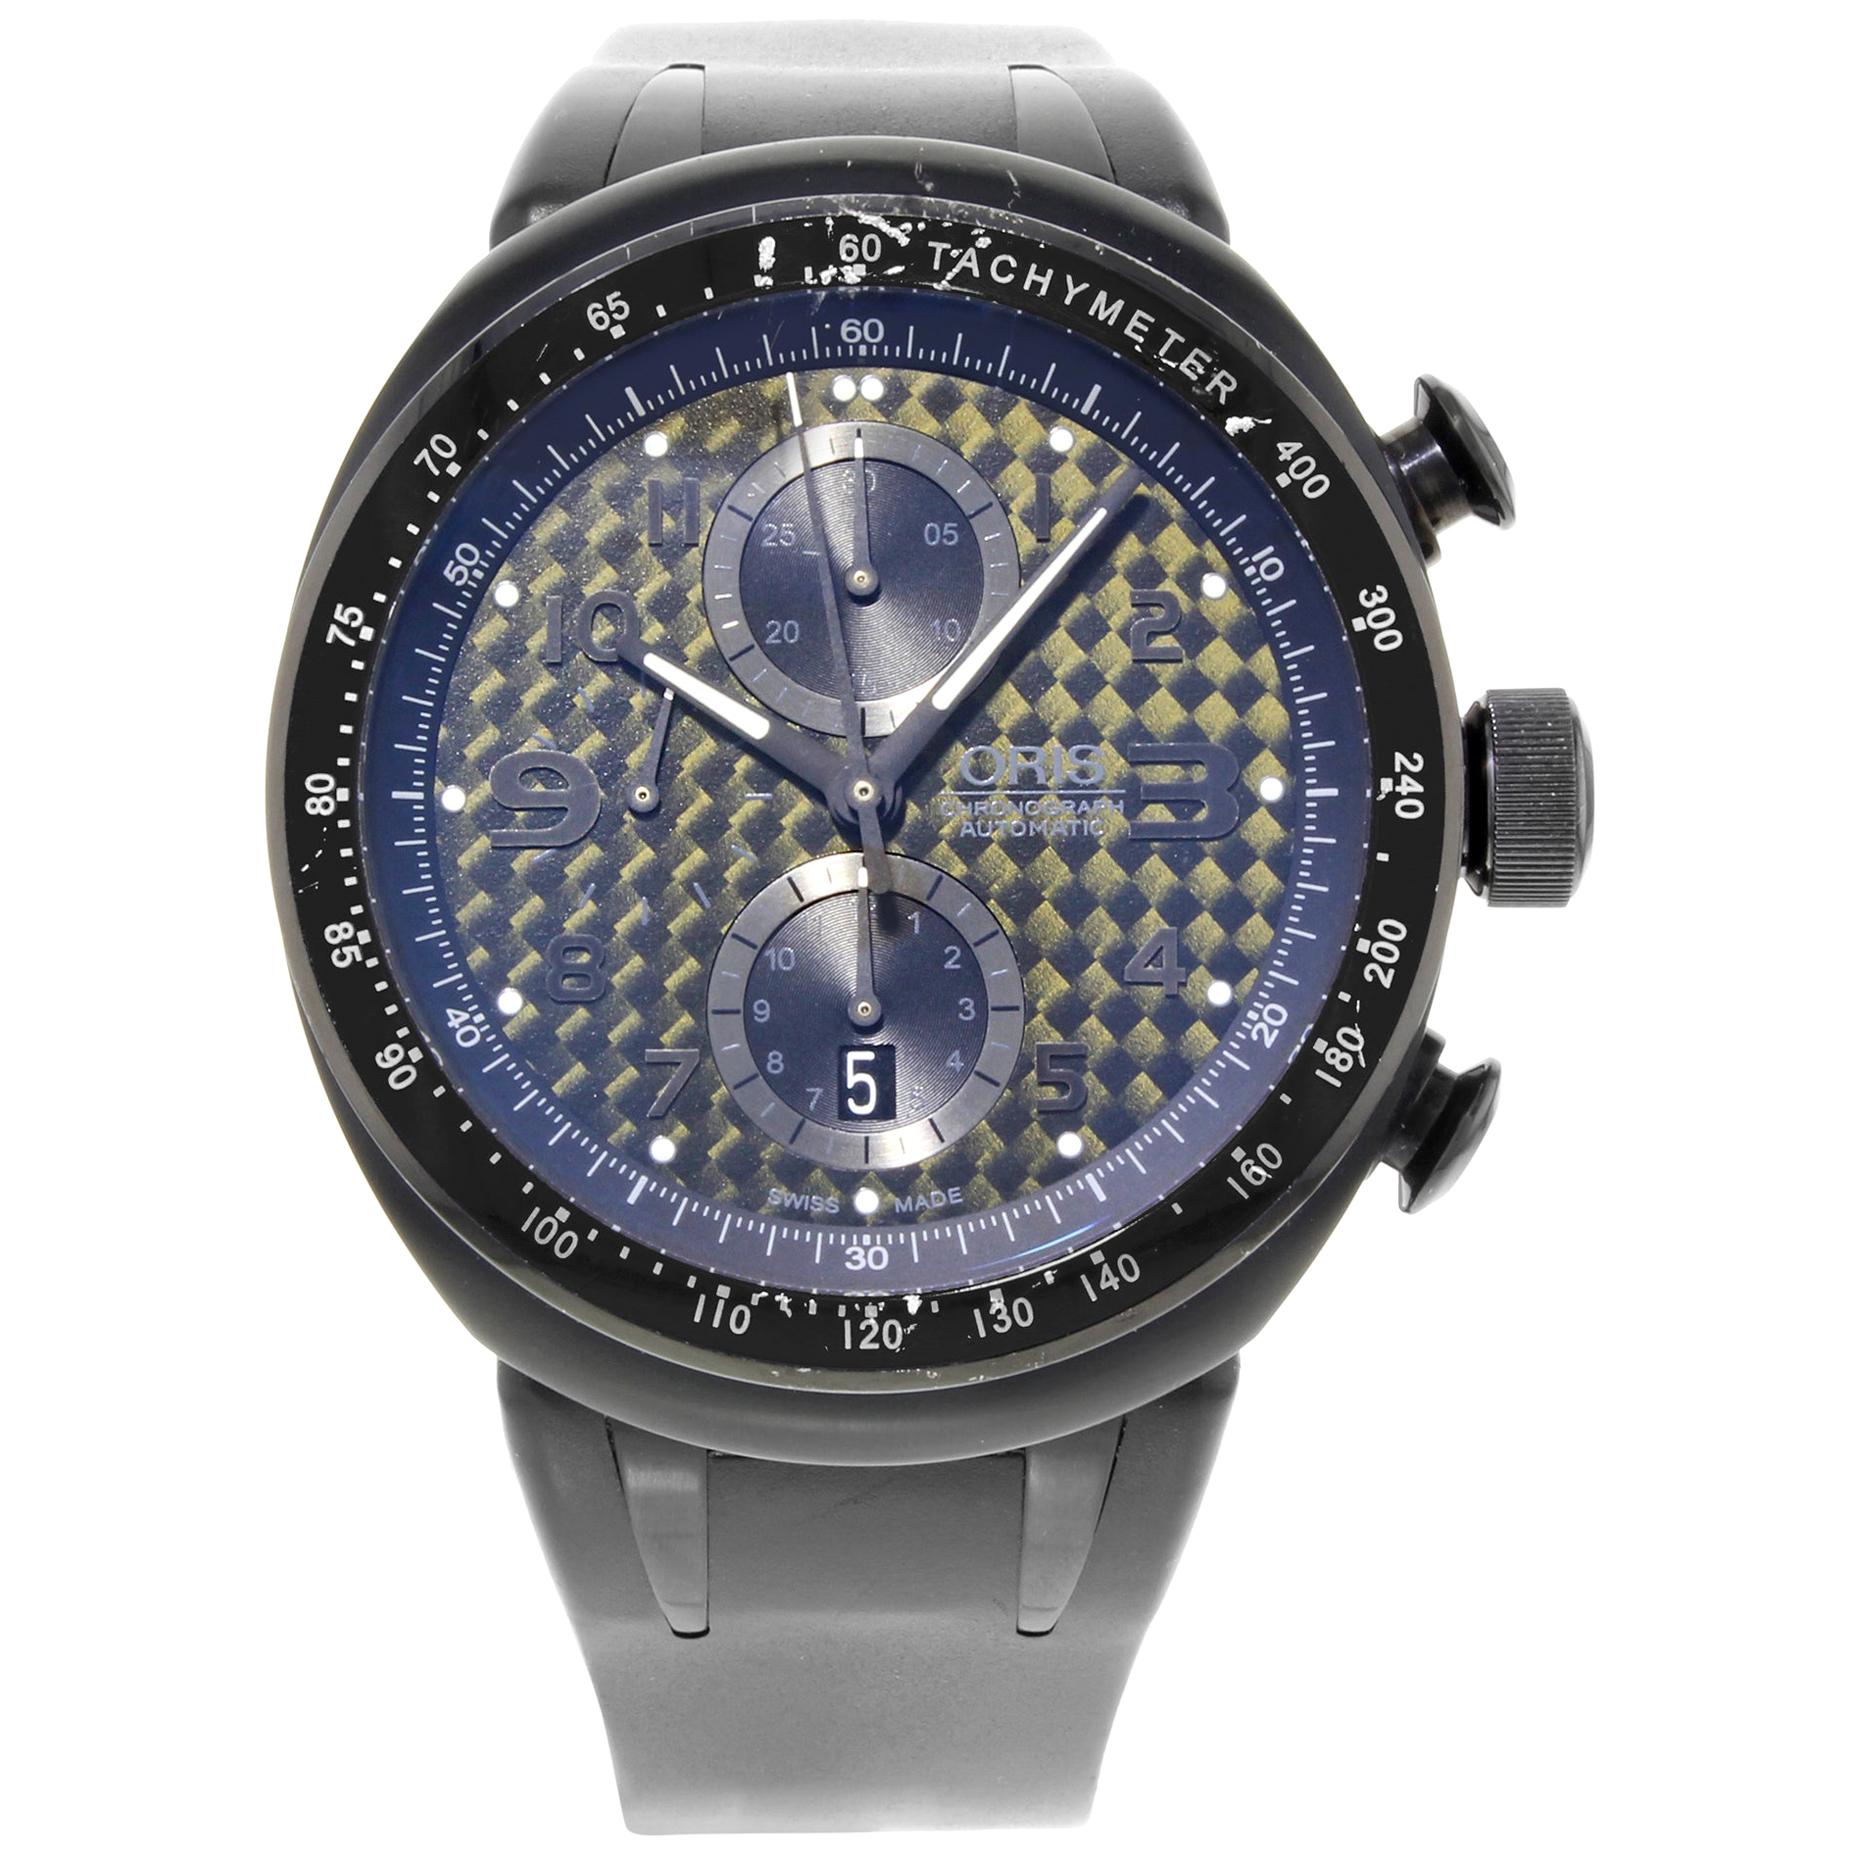 Oris TT3 Chronograph 7611 Black Titanium Carbon Fiber Dial Automatic Men's Watch